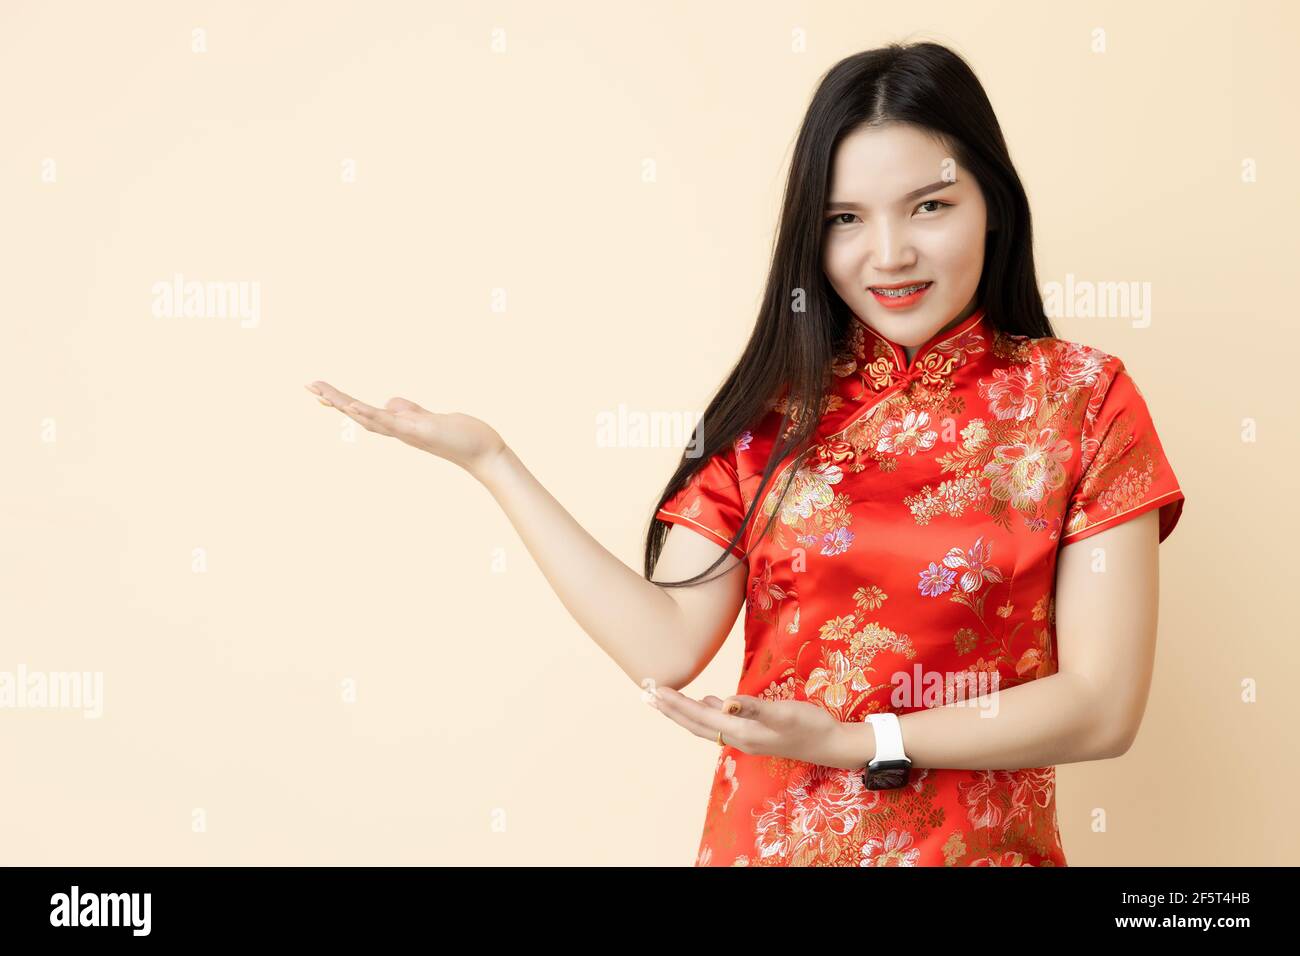 Asiatische chinesische teen Mädchen Hand zeigen Display Präsentation Verkauf Förderung Haltung Dressing Qipao traditionellen Tuch. Stockfoto